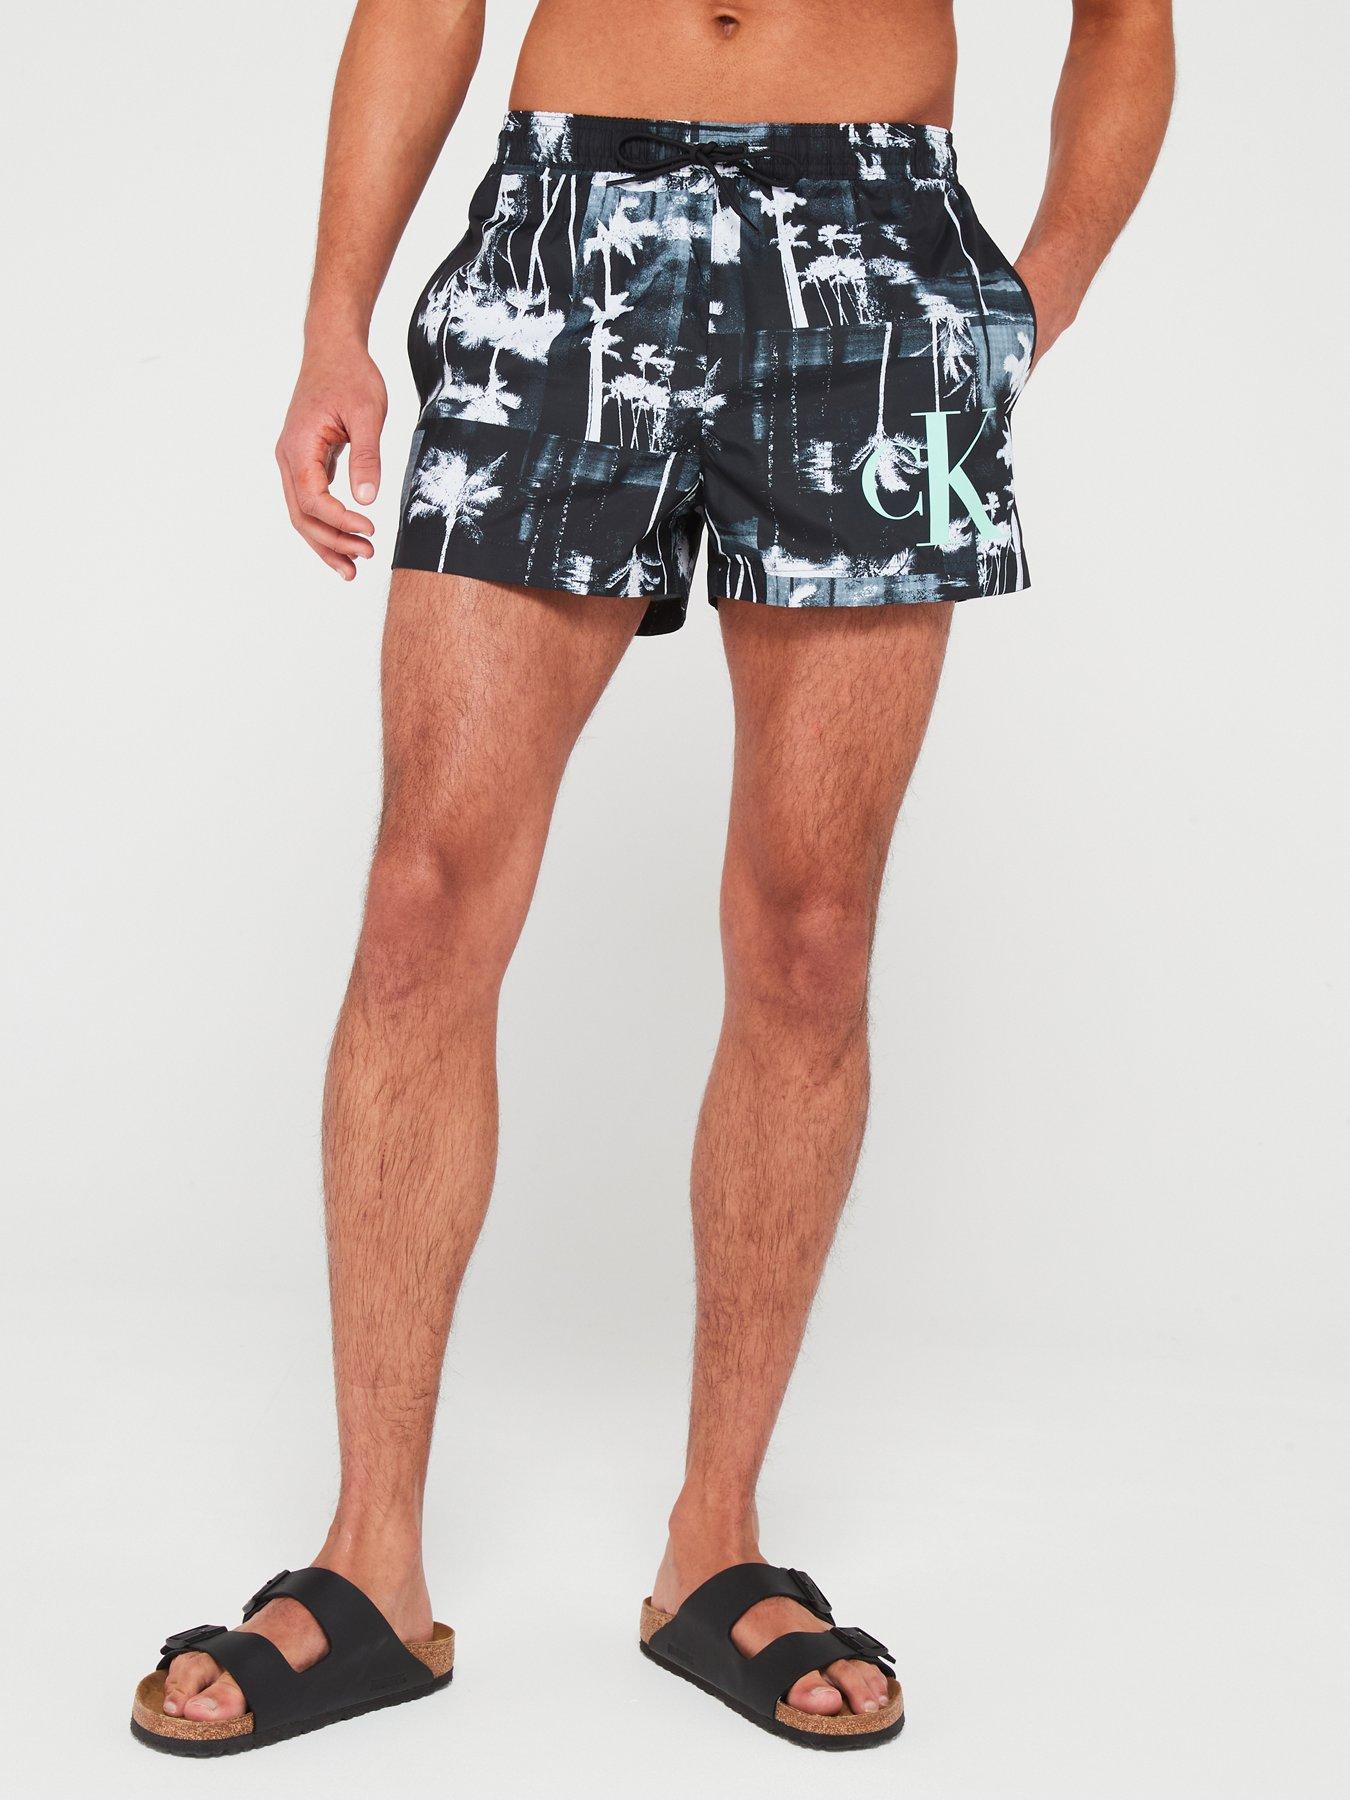 Calvin Klein Shorts, Shop Men's Calvin Klein Shorts